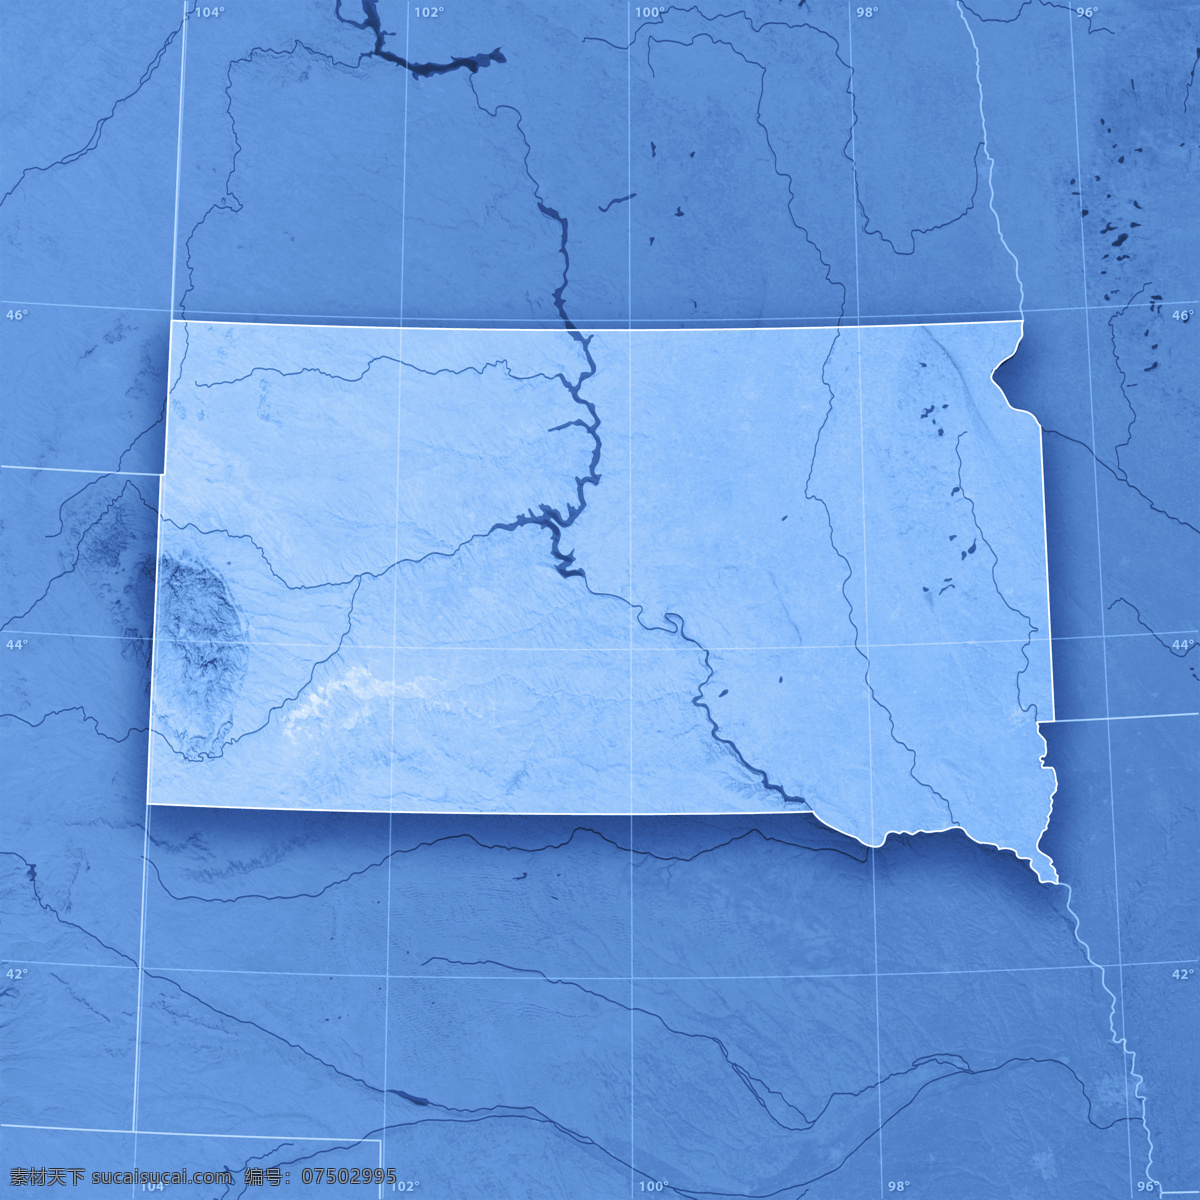 蓝色 美国 地图 美国地图 3d渲染地图 蓝色地图 其他类别 环境家居